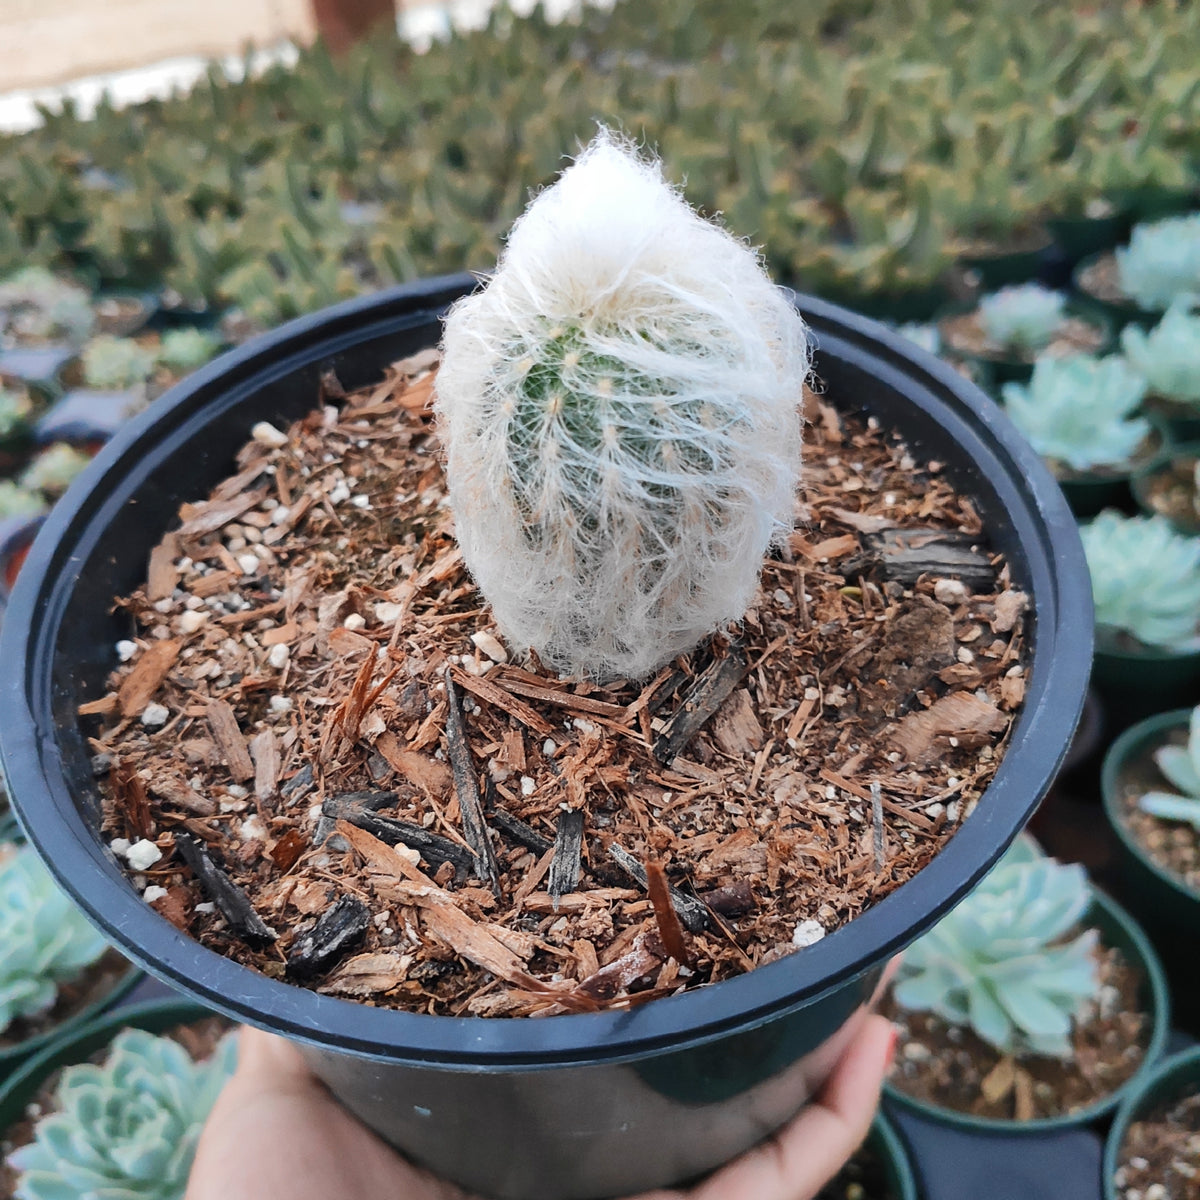 Espostoa melanostele - Peruvian Old Lady Cactus